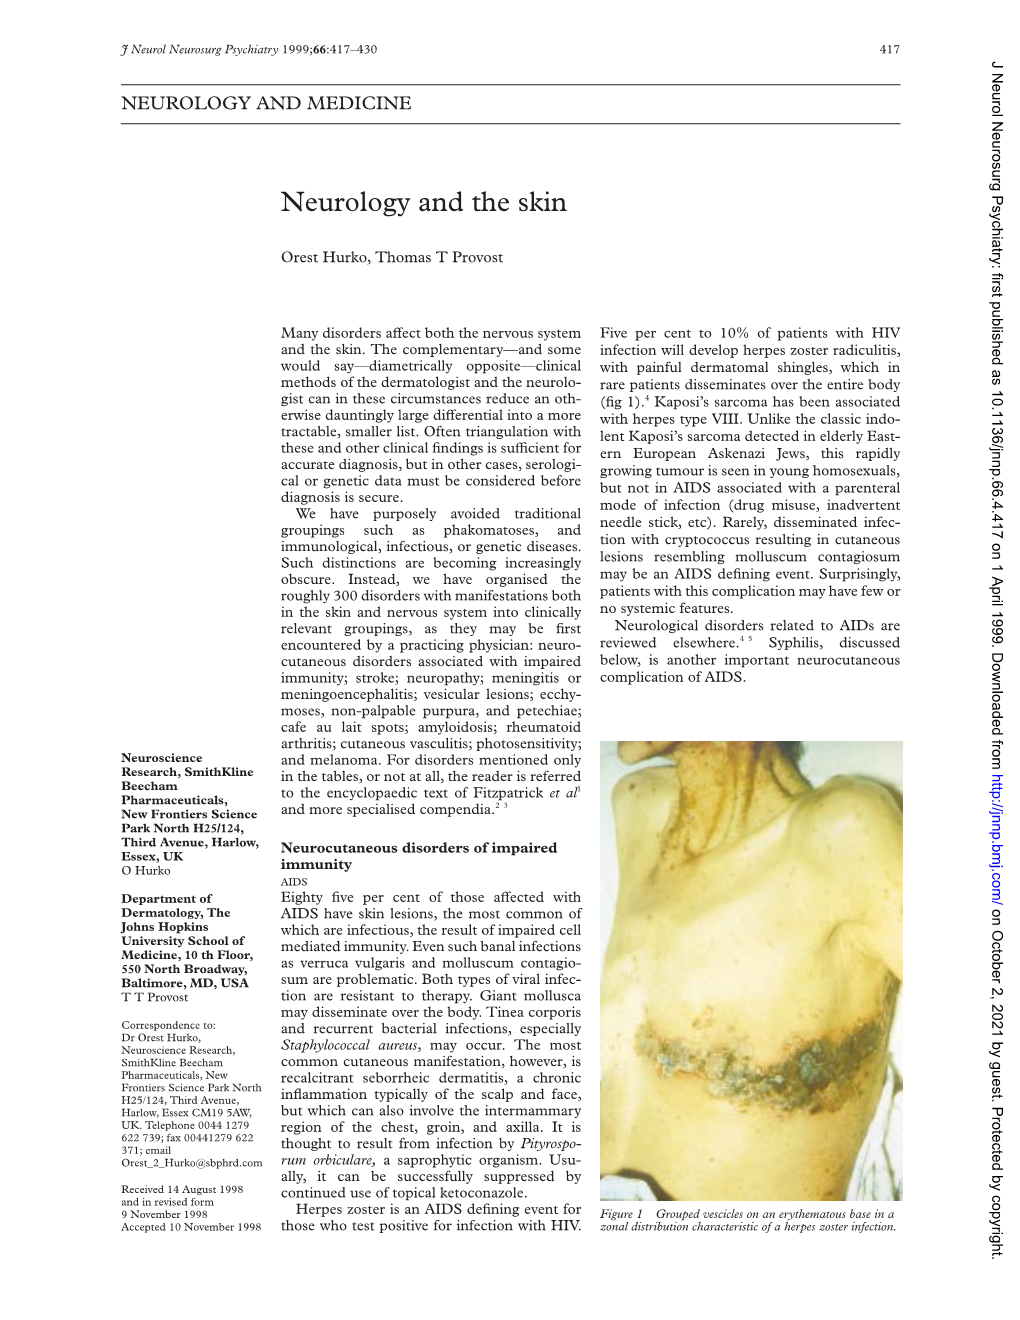 Neurology and the Skin